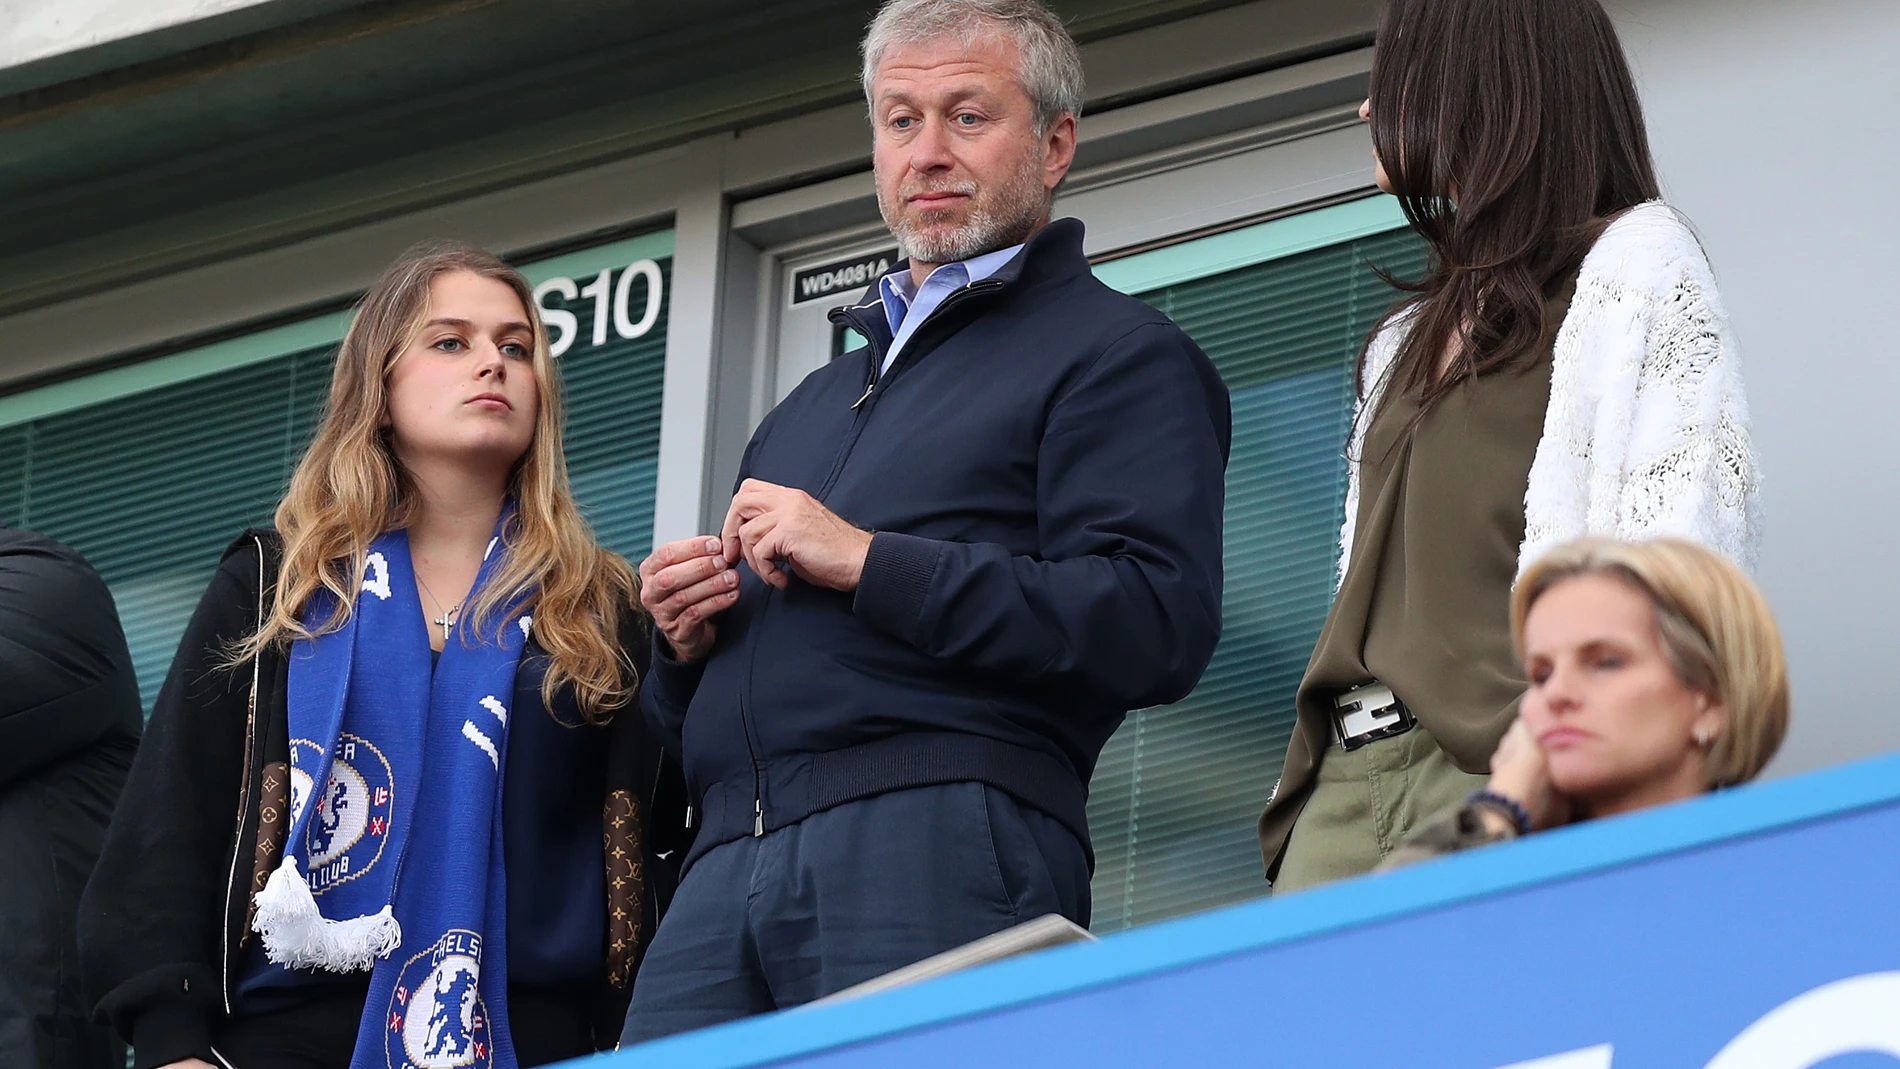 El propietario del Chelsea, Roman Abramovich, con su hija Sofia Abramovich (izquierda) en las gradas.